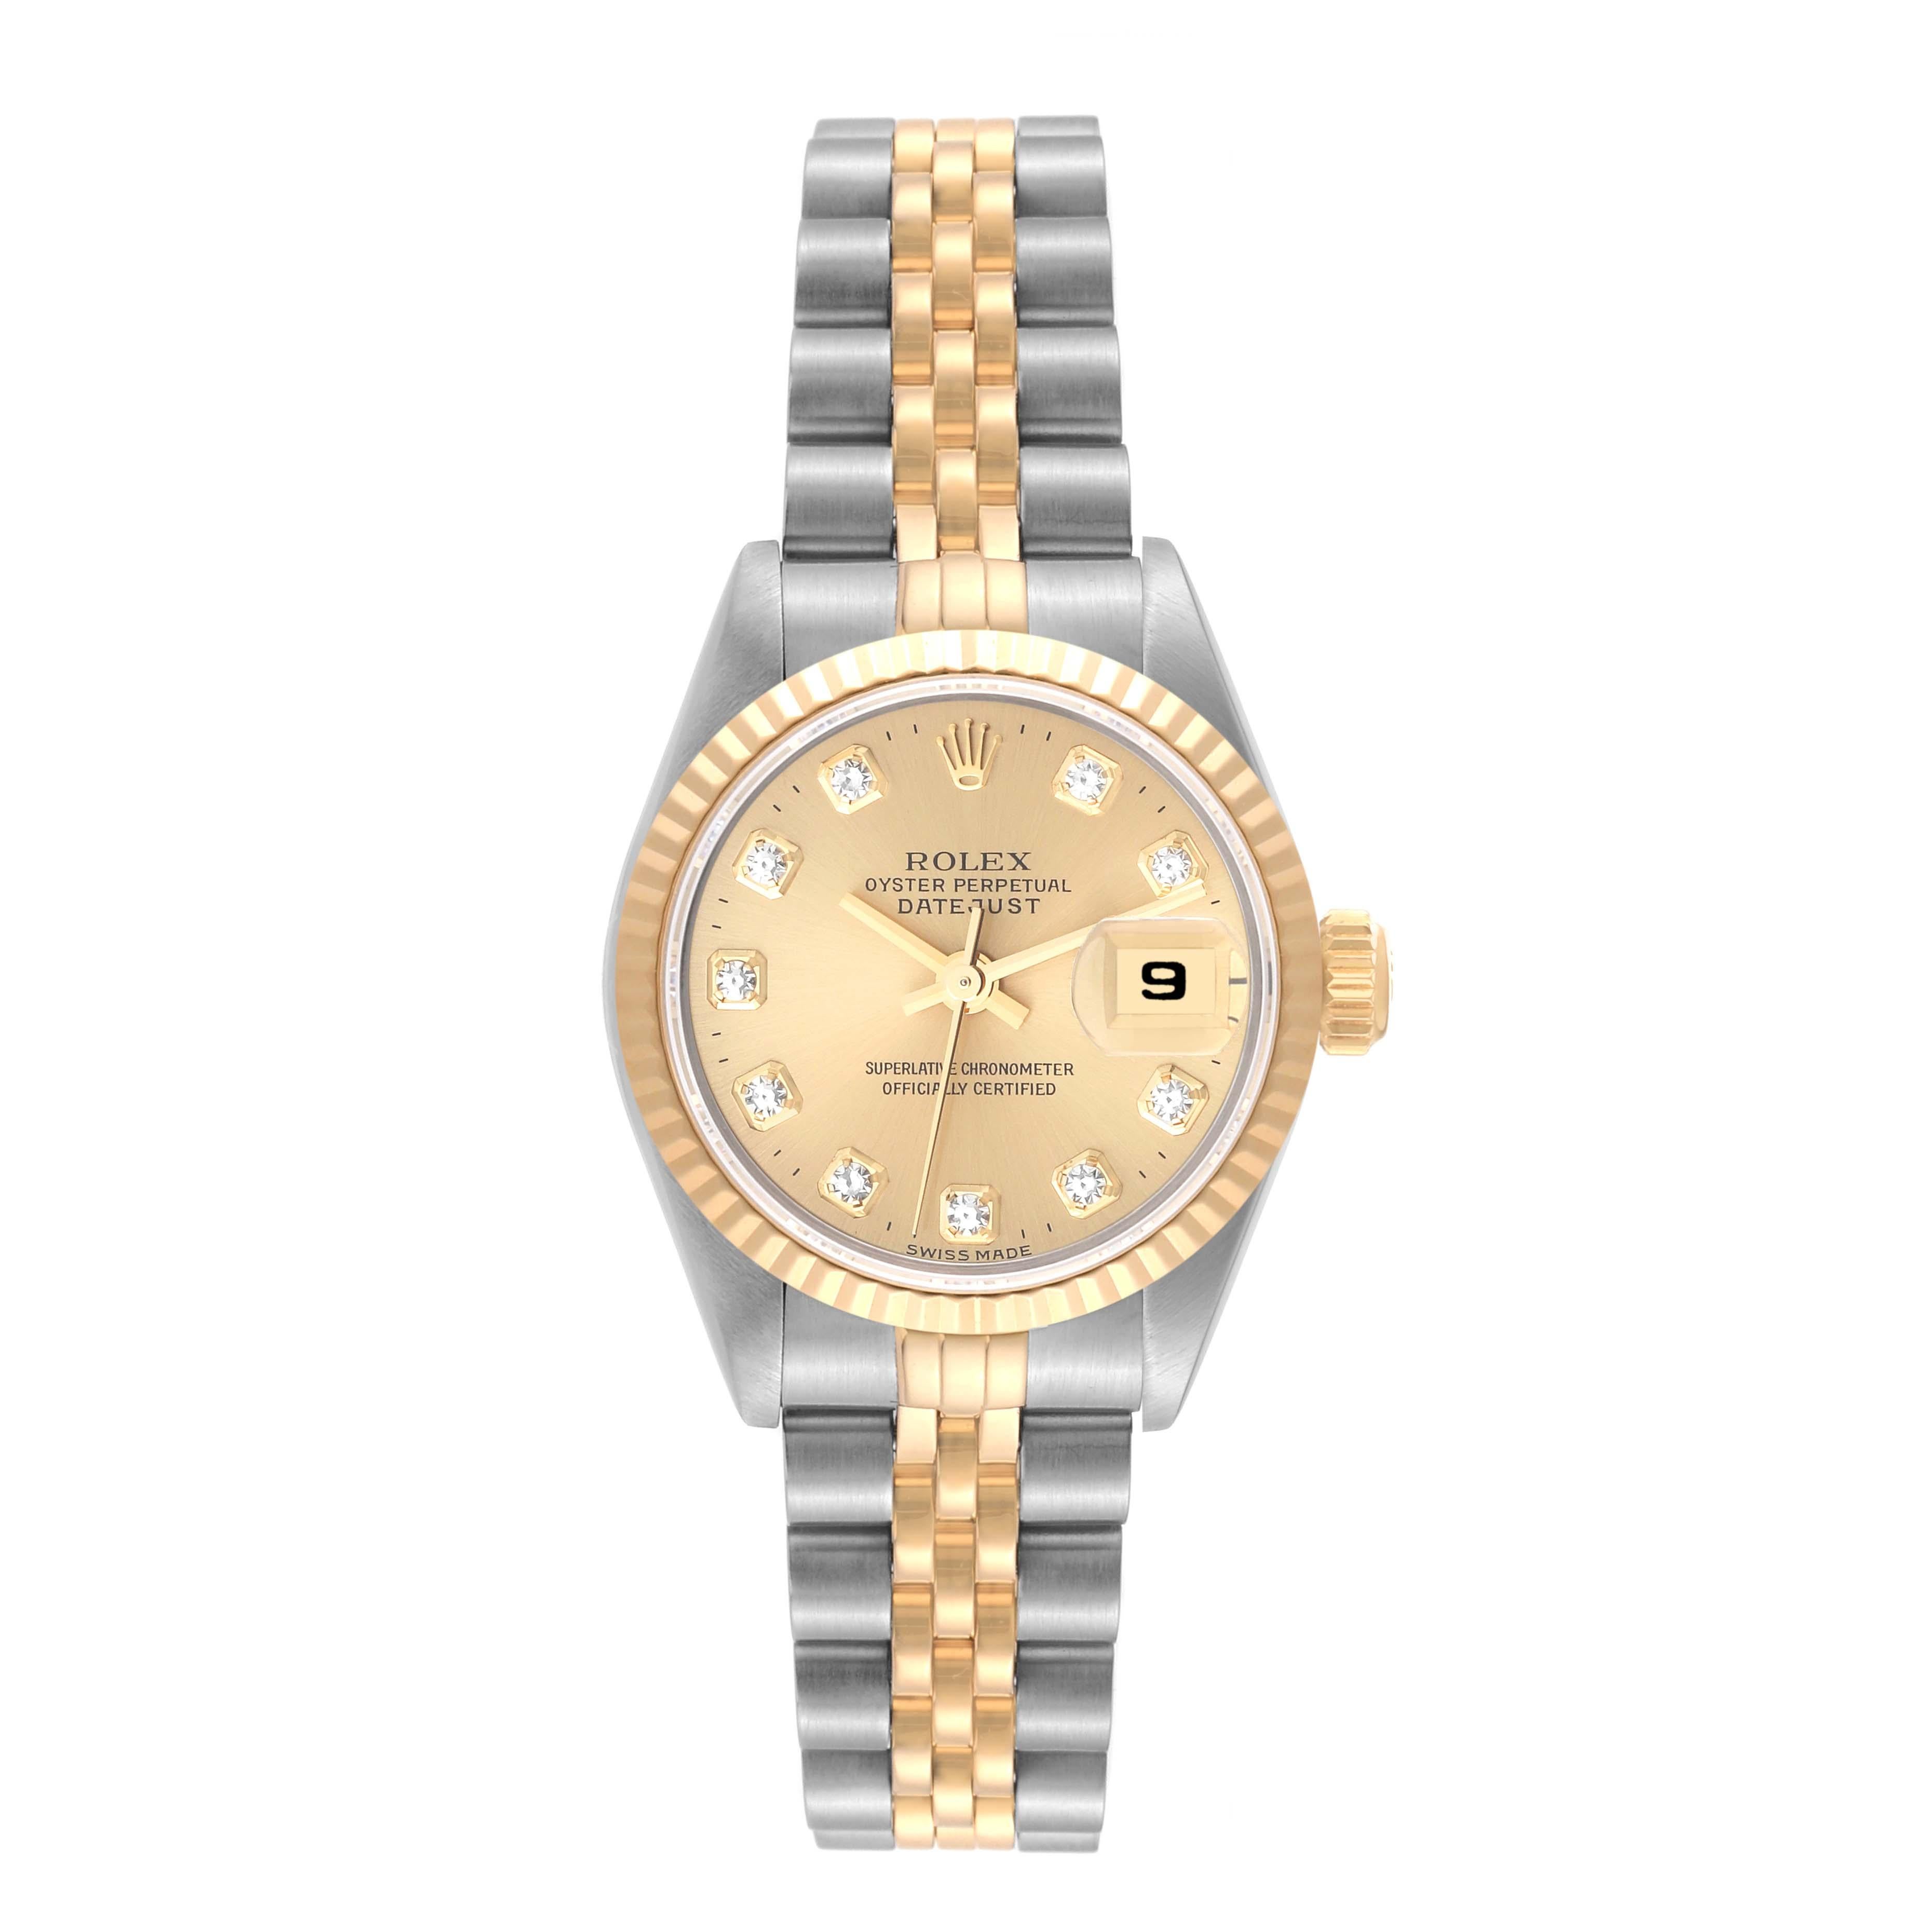 Rolex Datejust Diamond Dial Steel Yellow Gold Ladies Watch 69173. Mouvement automatique à remontage automatique, officiellement certifié chronomètre. Boîtier oyster en acier inoxydable de 26.0 mm de diamètre. Logo Rolex sur la couronne. Lunette